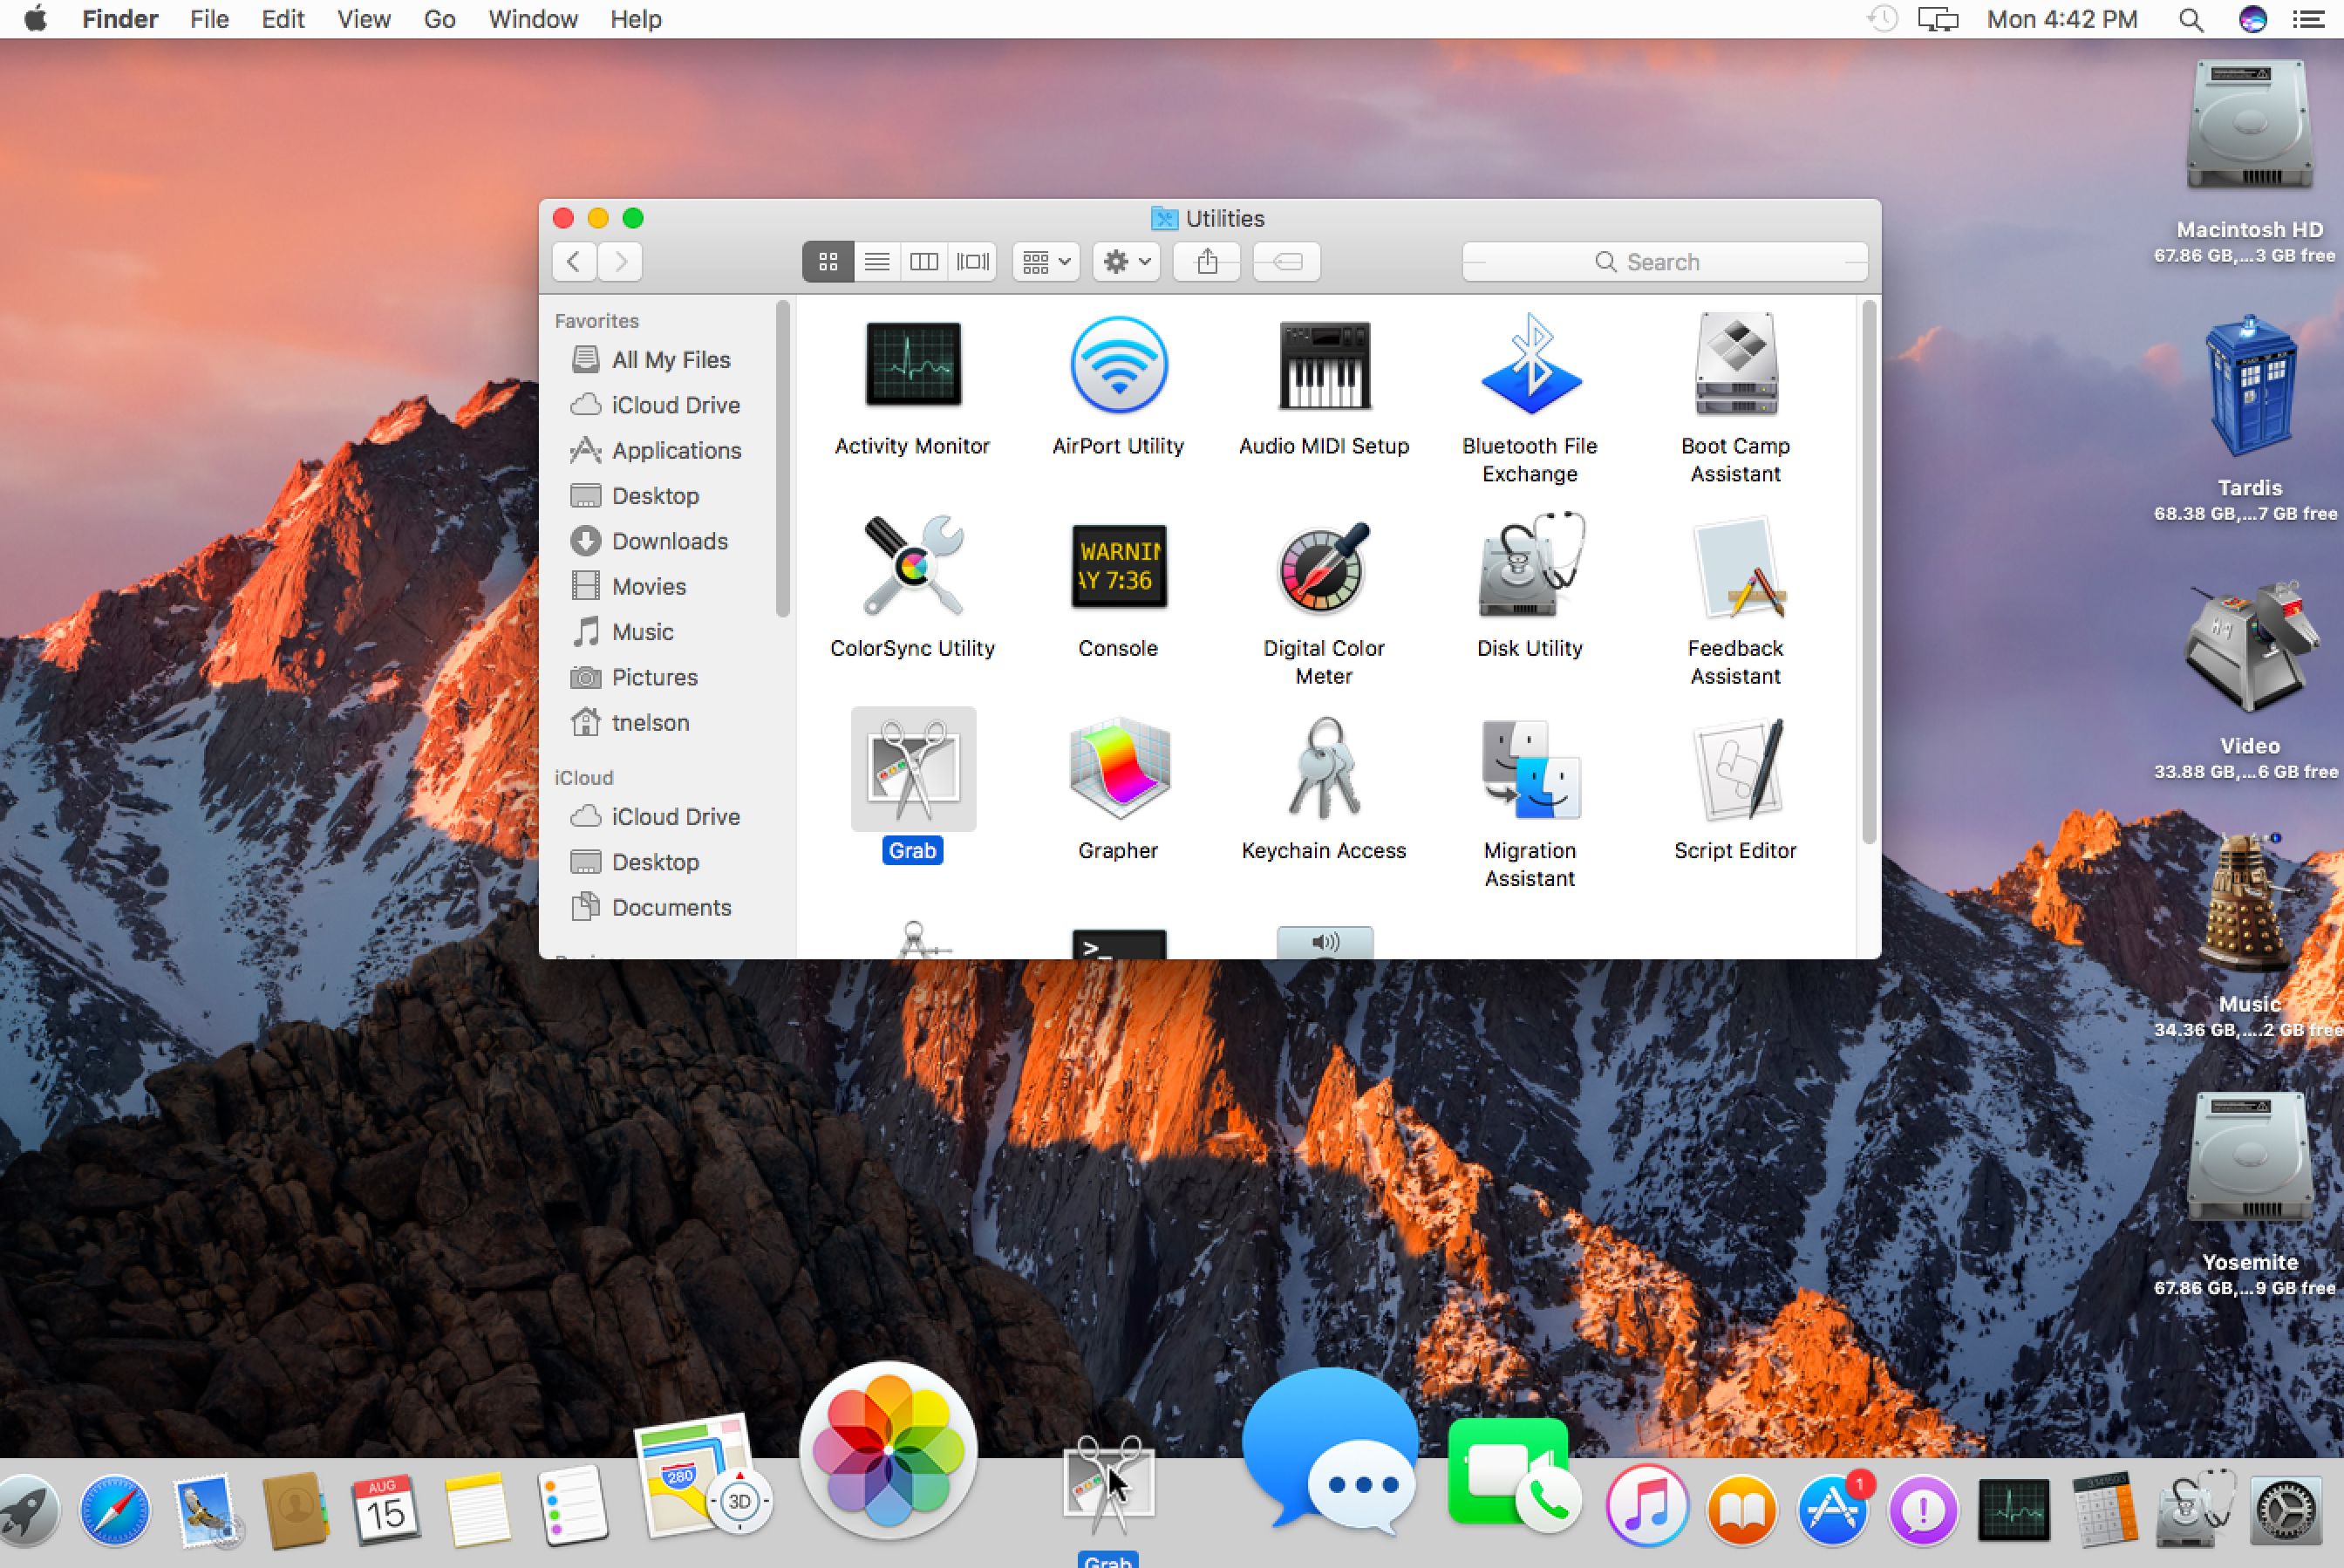 Mac desktop launcher